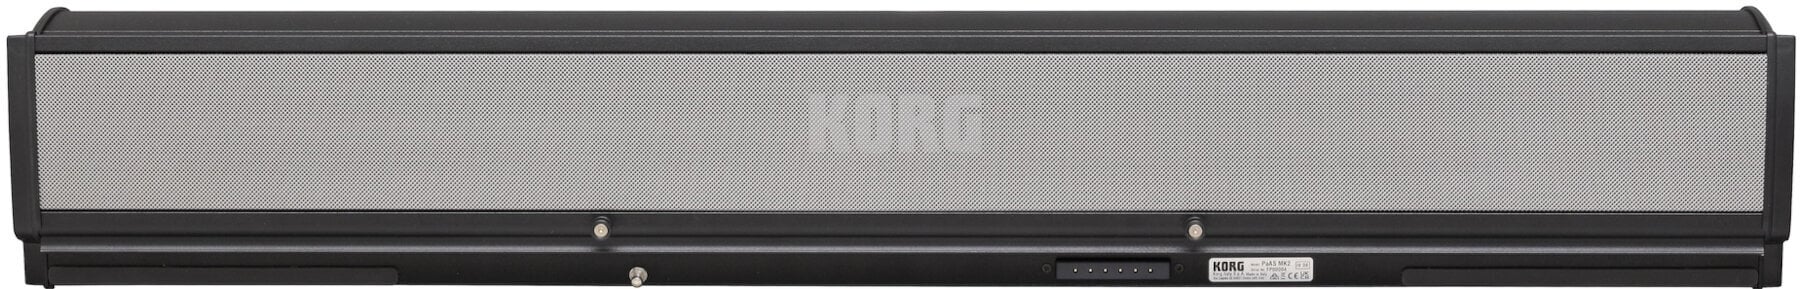 Amplificador para teclado Korg PaAS MK2